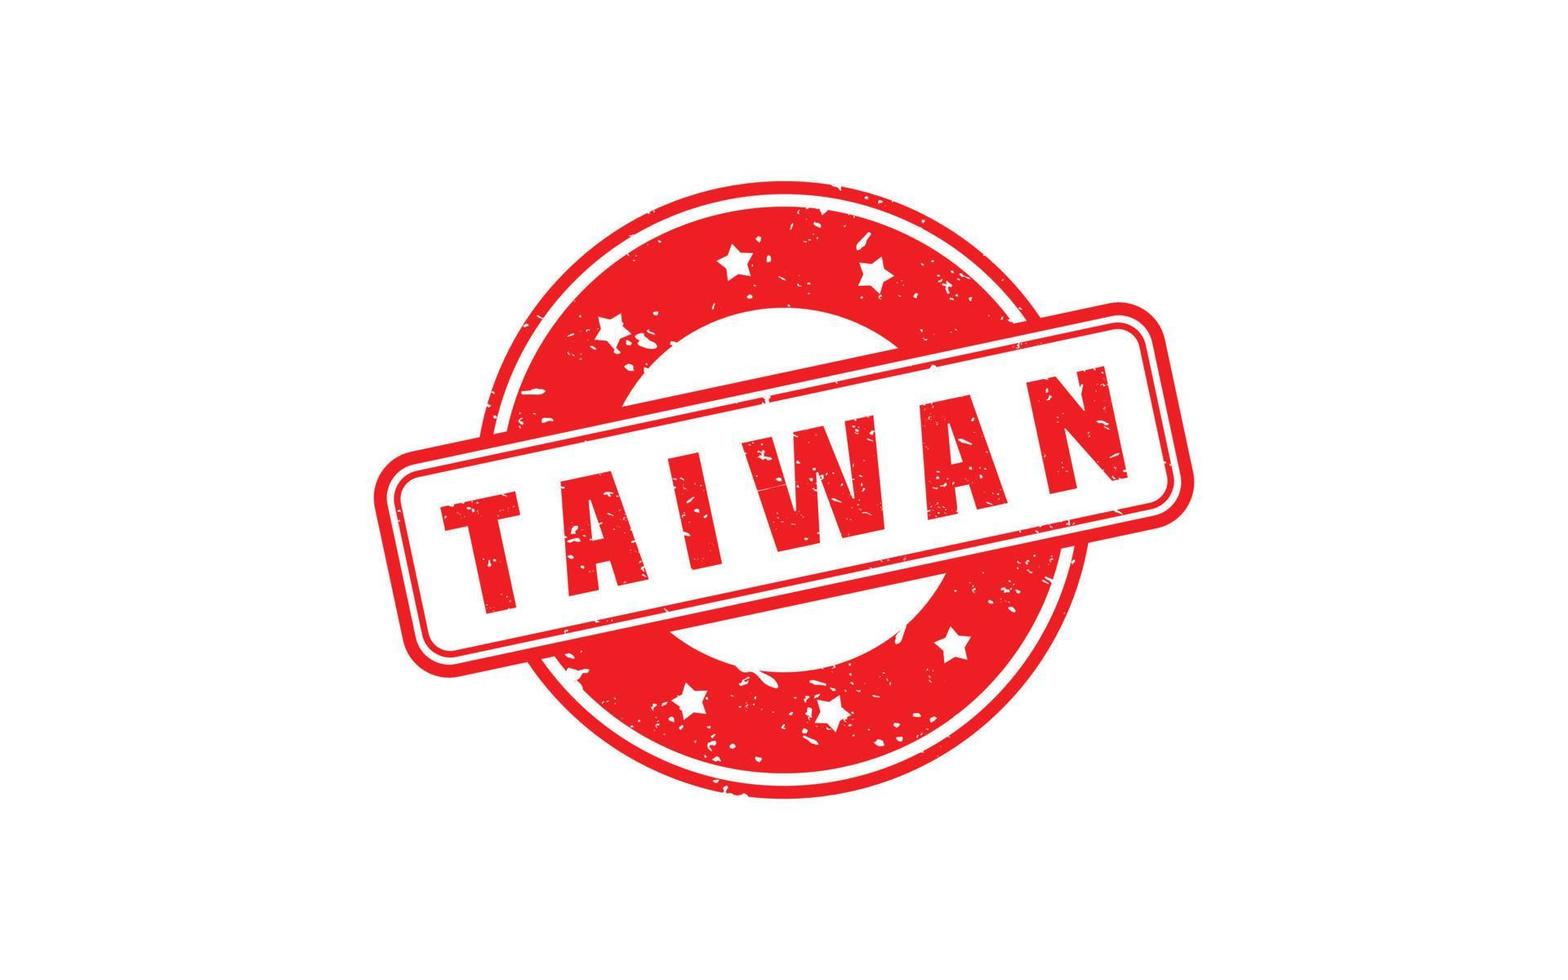 Taïwan timbre caoutchouc avec grunge style sur blanc Contexte vecteur